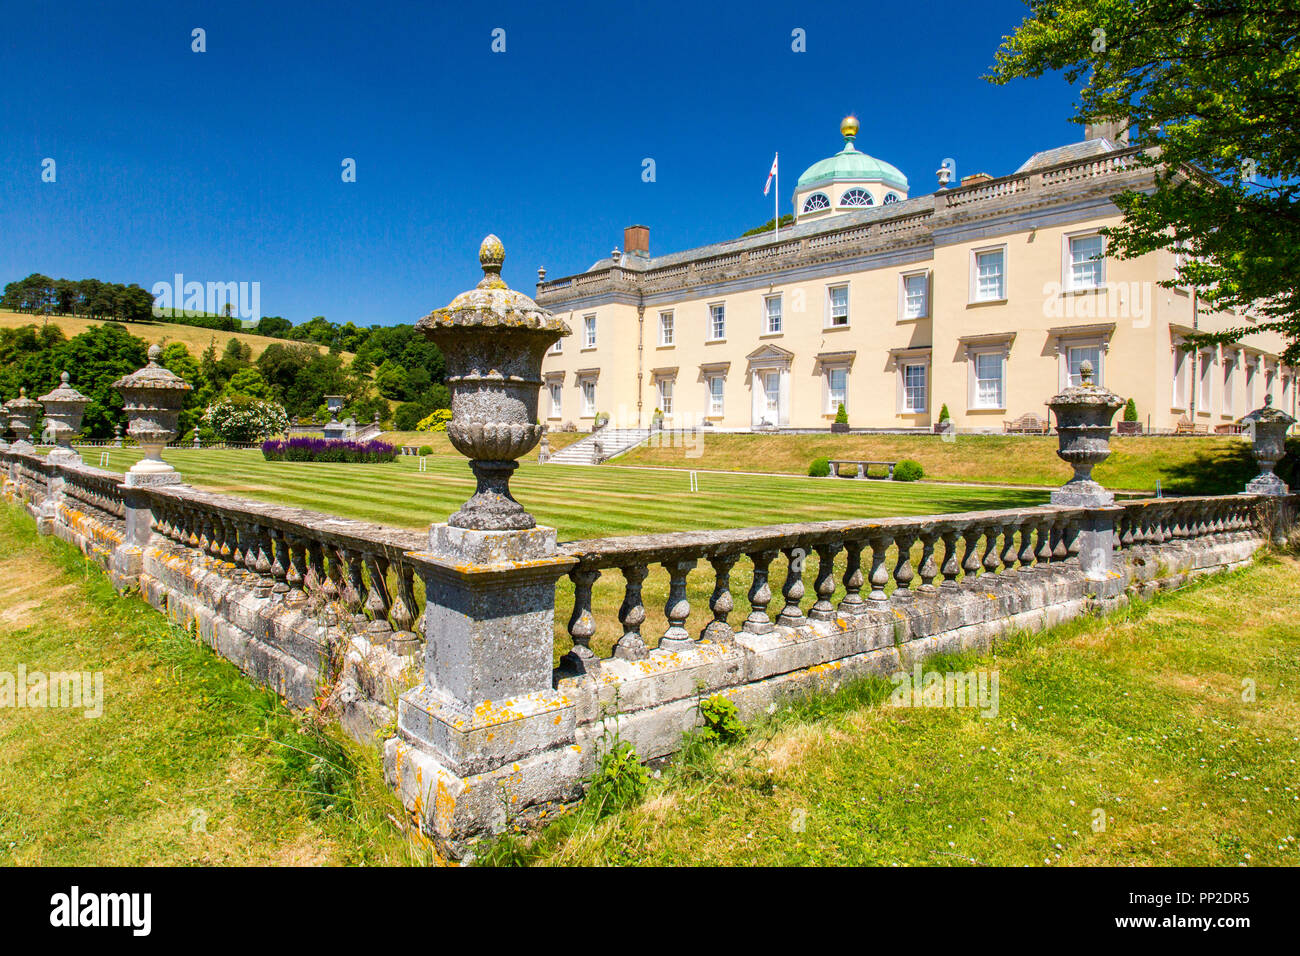 Impressionante architettura palladiana a Castle Hill House e giardini, vicino Filleigh, Devon, Inghilterra, Regno Unito Foto Stock